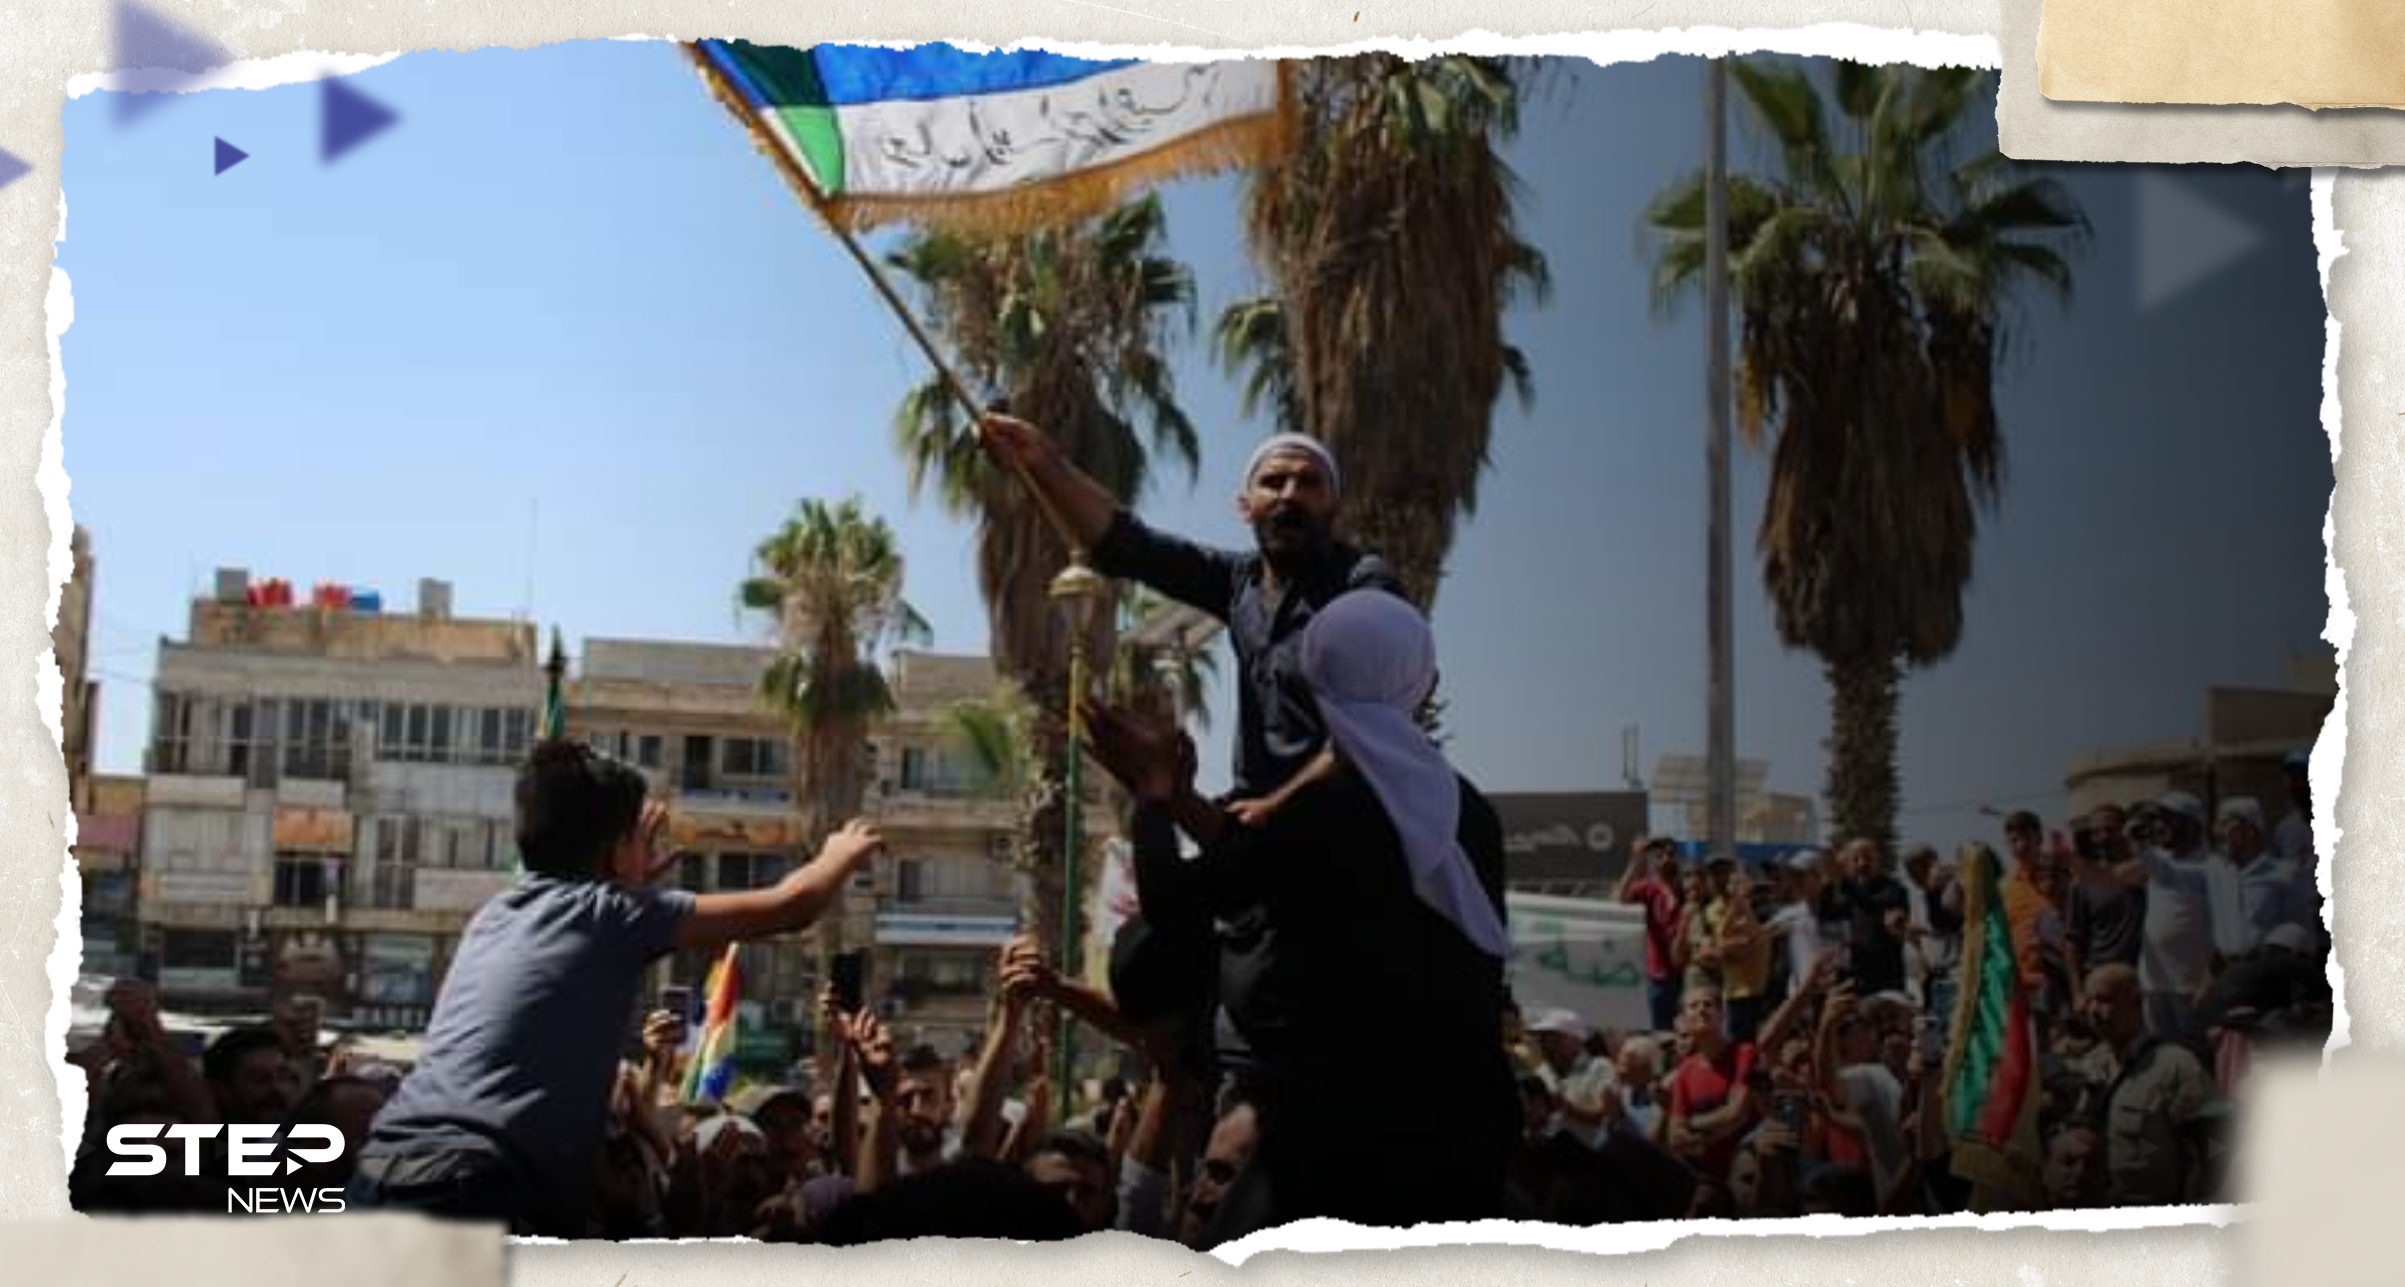 بالفيديو || "صاح الصايح وطب الأسد خوف".. مظاهرات حاشدة بالسويداء وشيخ الطائفة "الدرزية" يقول كلمته